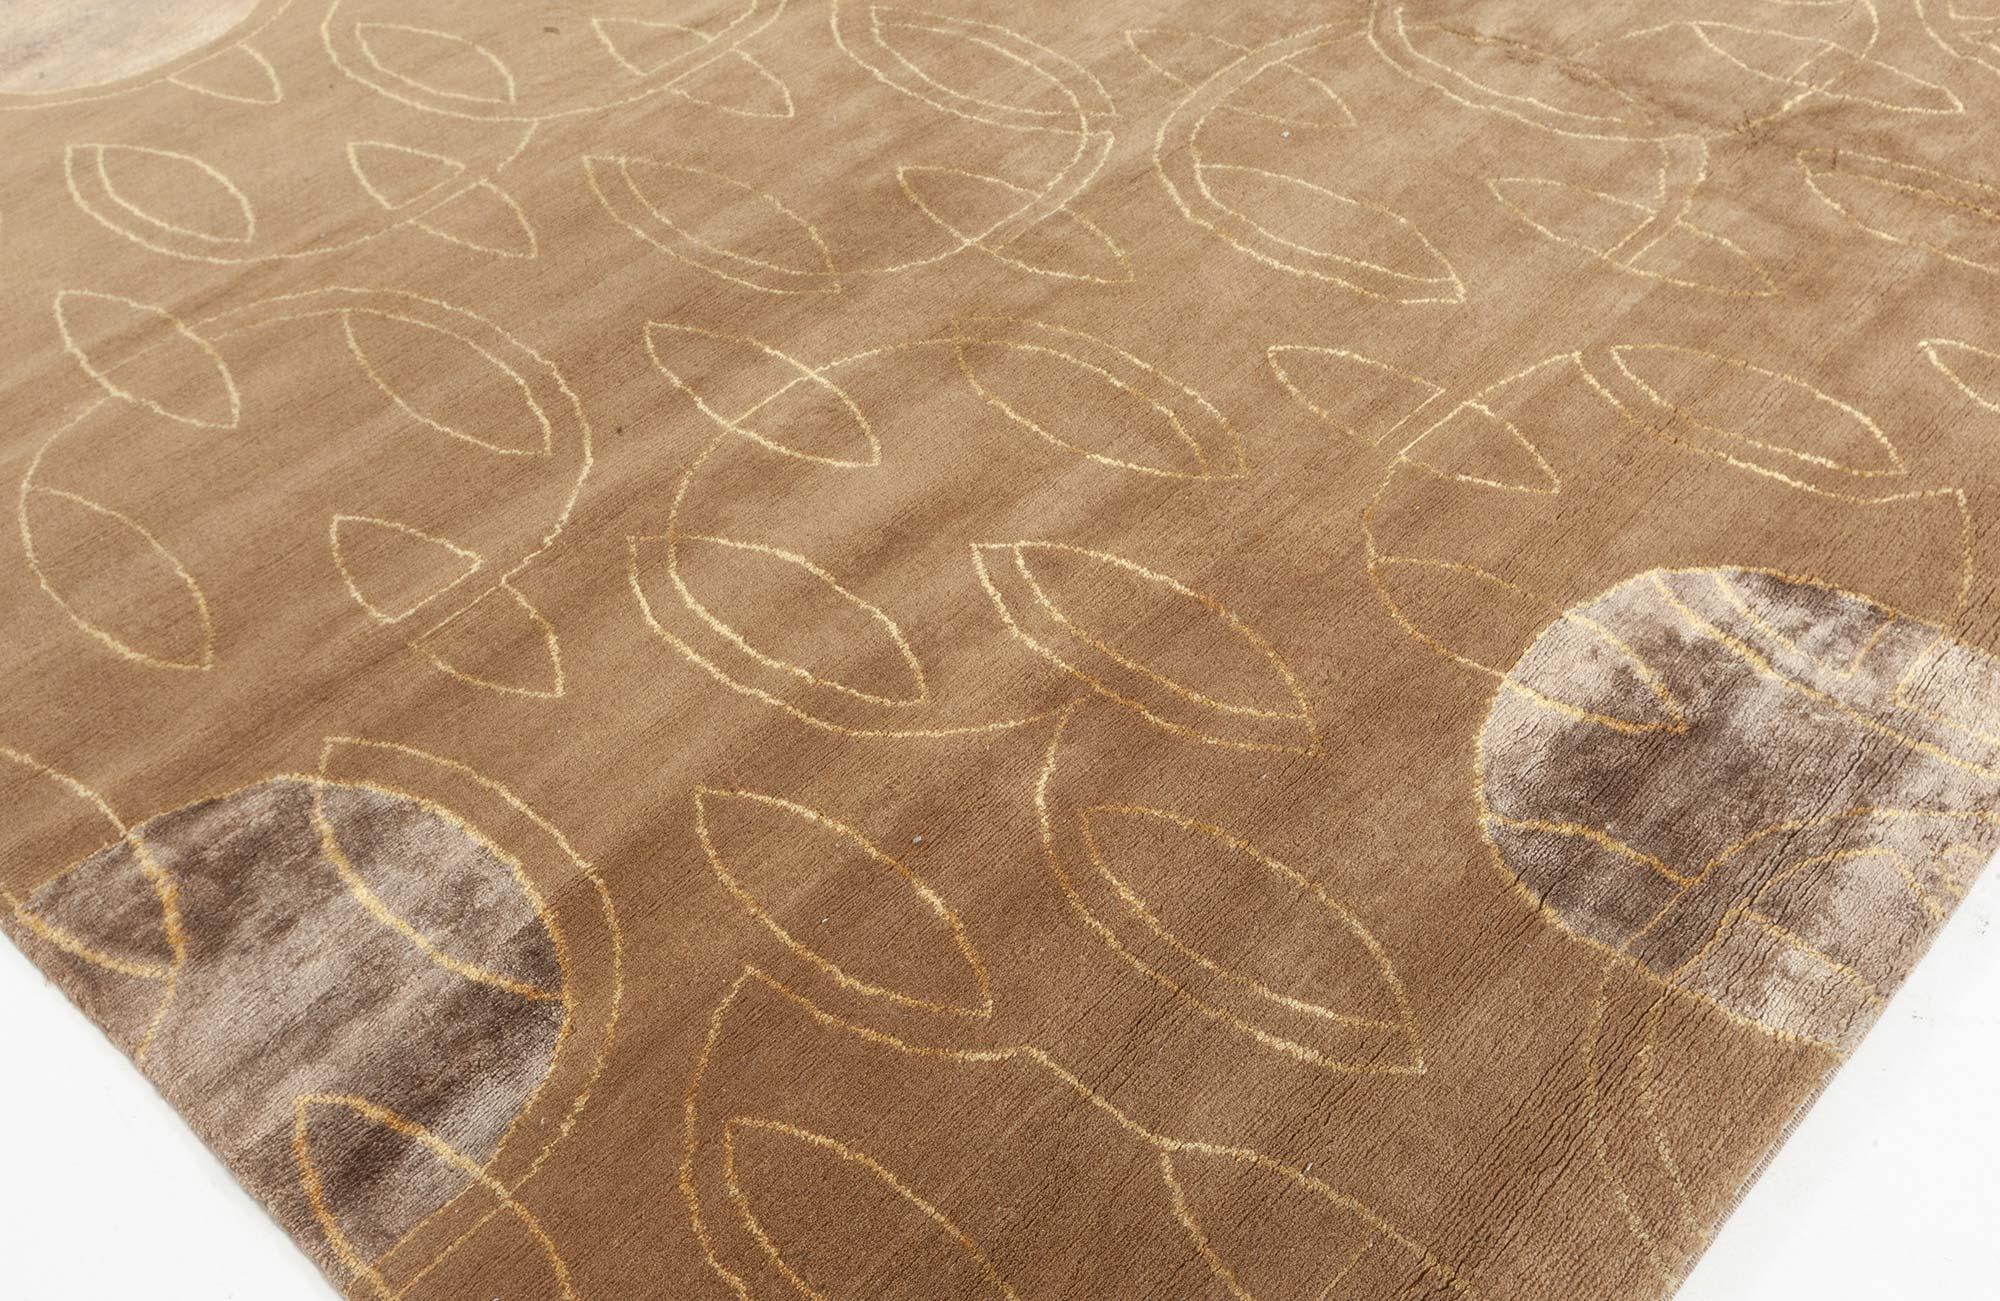 Art Deco inspired Tibetan rug in brown and beige by Doris Leslie Blau.
Size: 8.0